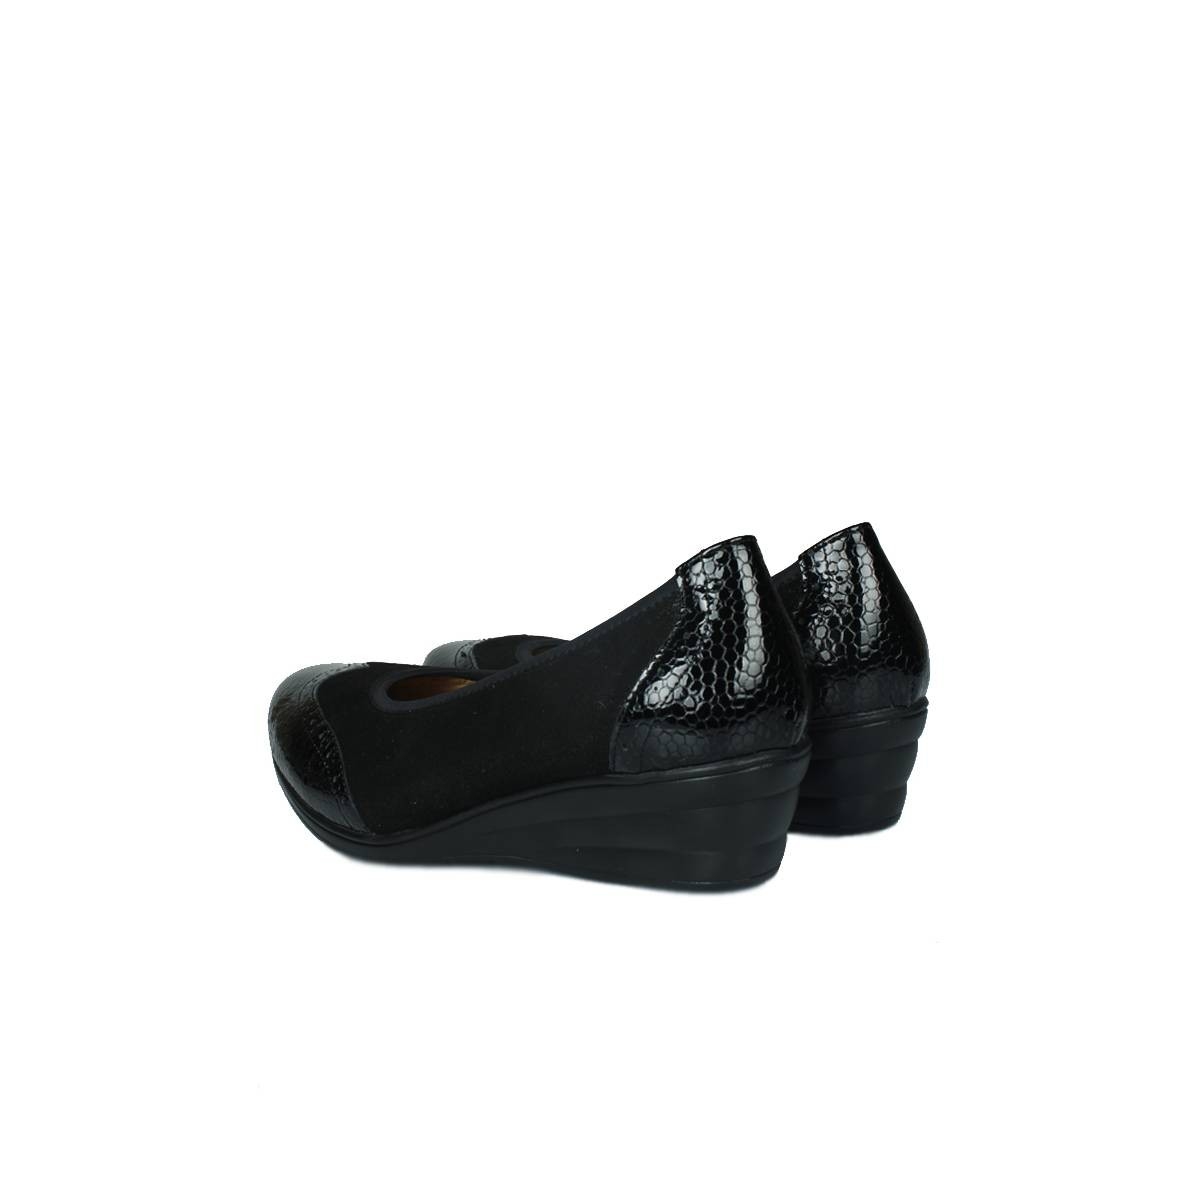 Flo - 6402 025 Kadın Siyah Günlük Büyük & Küçük Numara Ayakkabı. 1